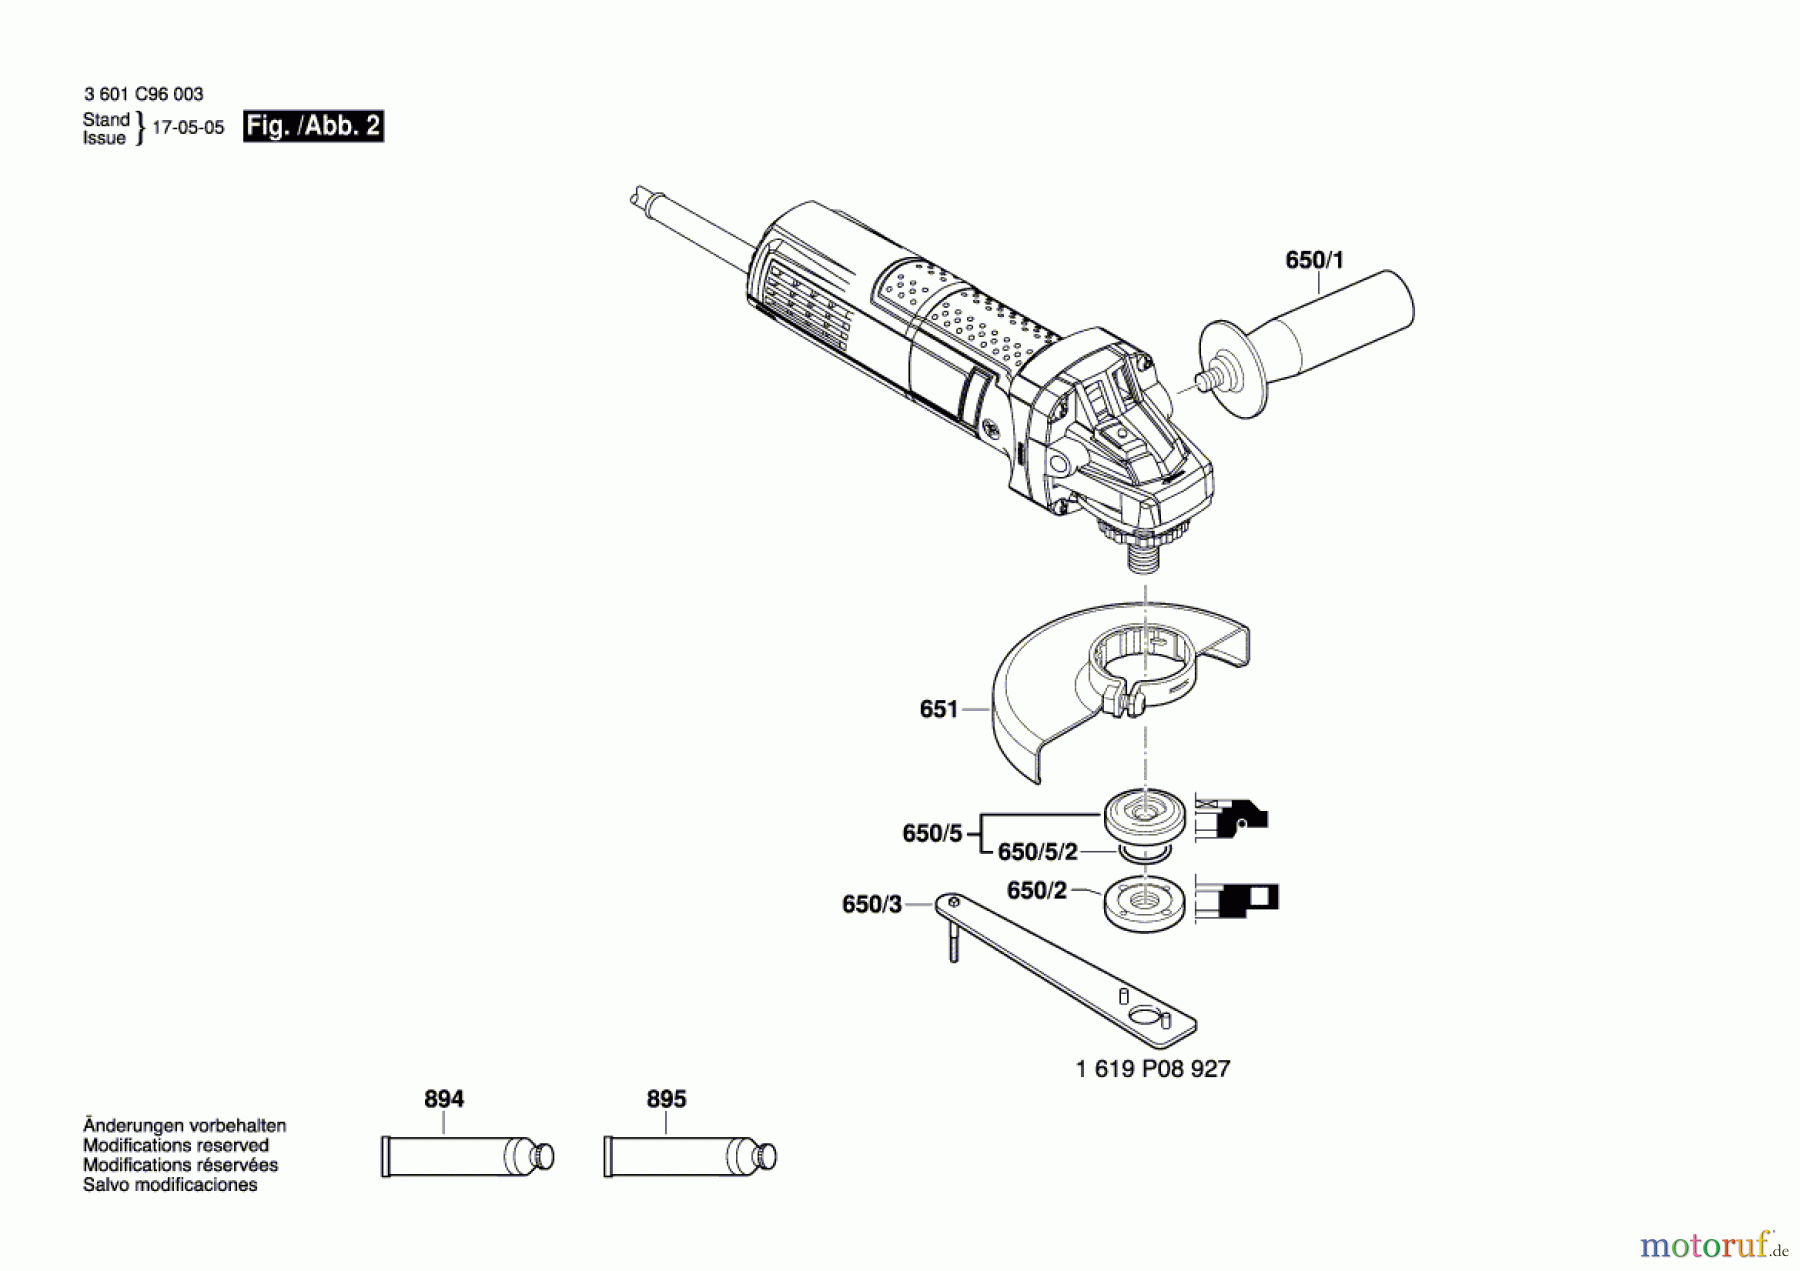  Bosch Werkzeug Winkelschleifer GWS 9-125 Seite 2